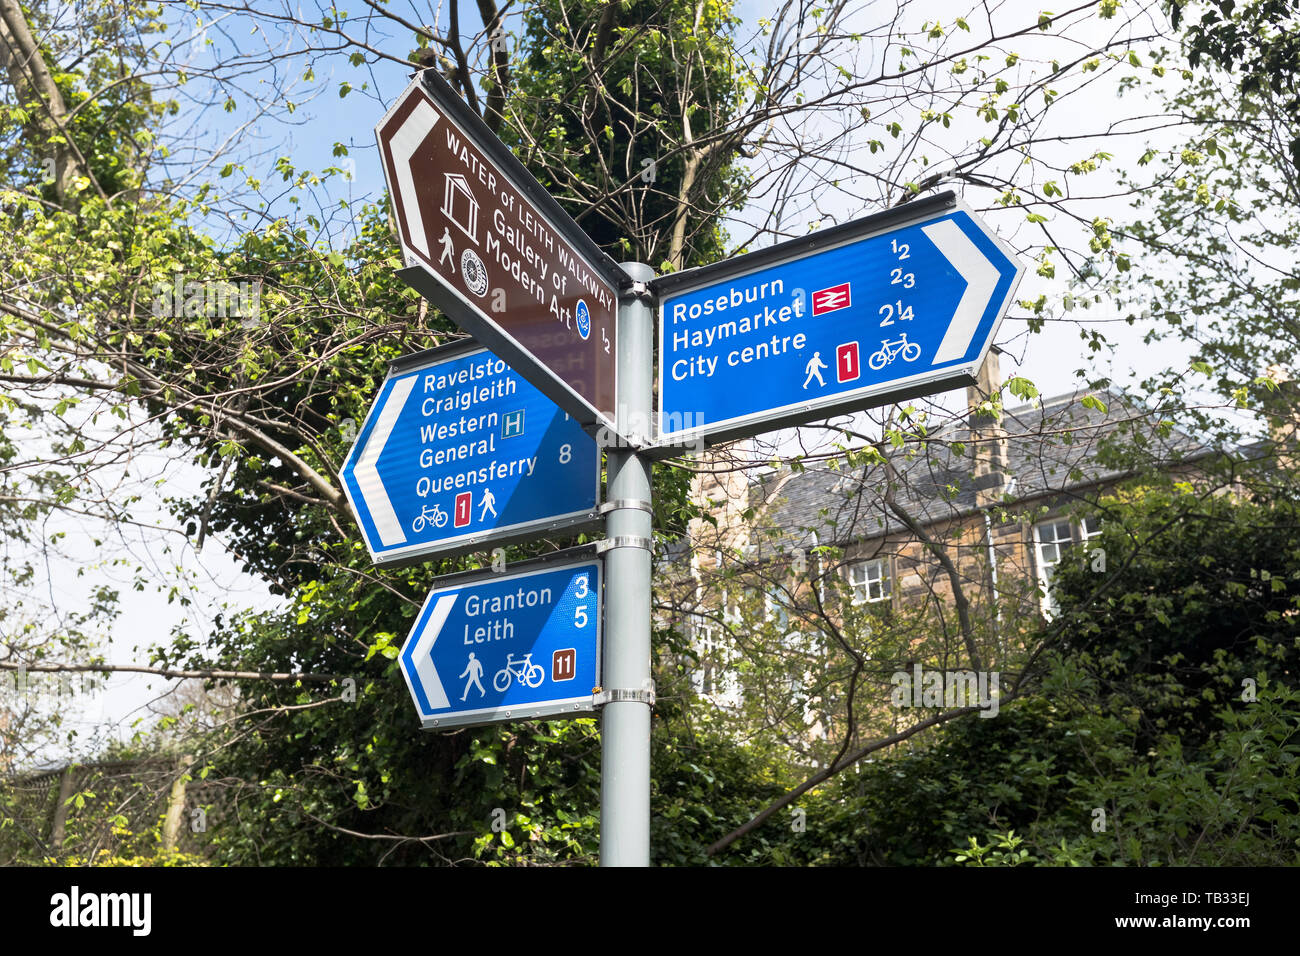 dh piste cyclable et sentier ROSEBURN EDINBURGH signalétique écossaise panneau de direction post scotland public paths uk Banque D'Images